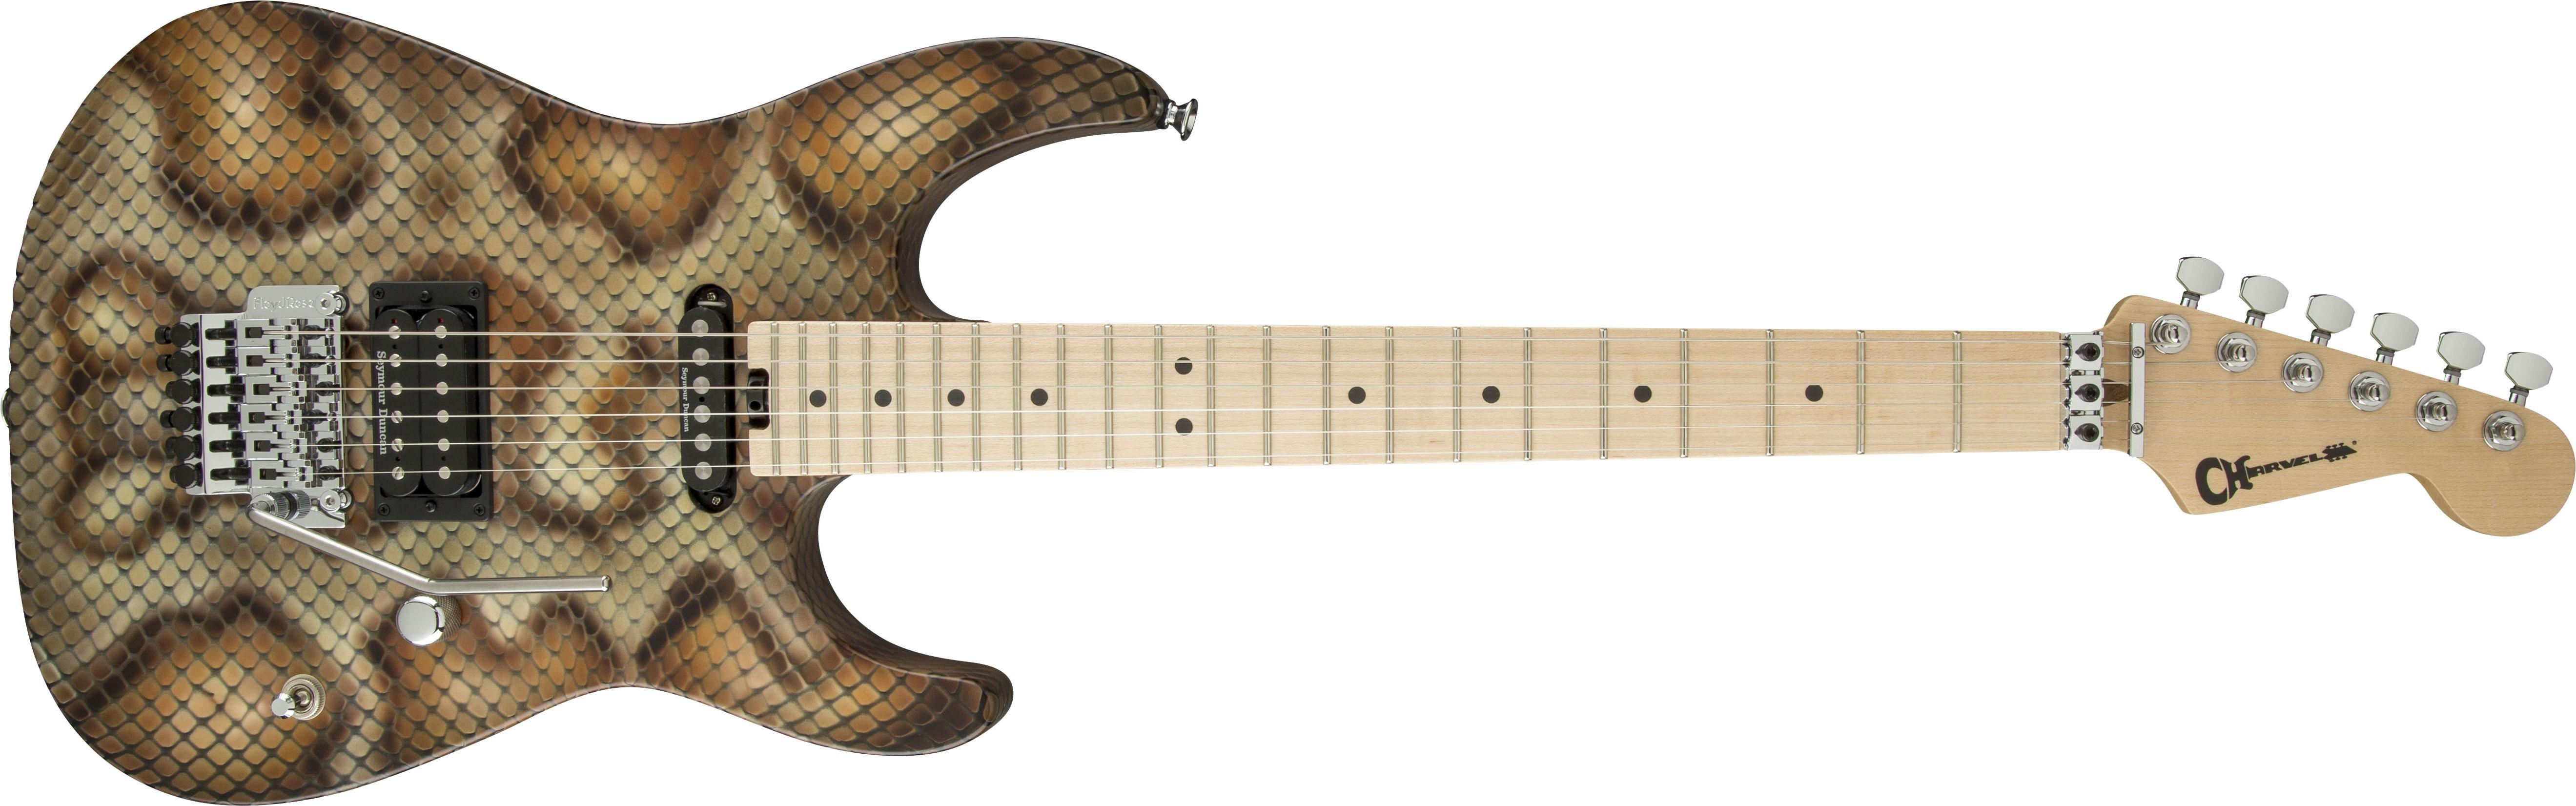 Змейка на гитаре